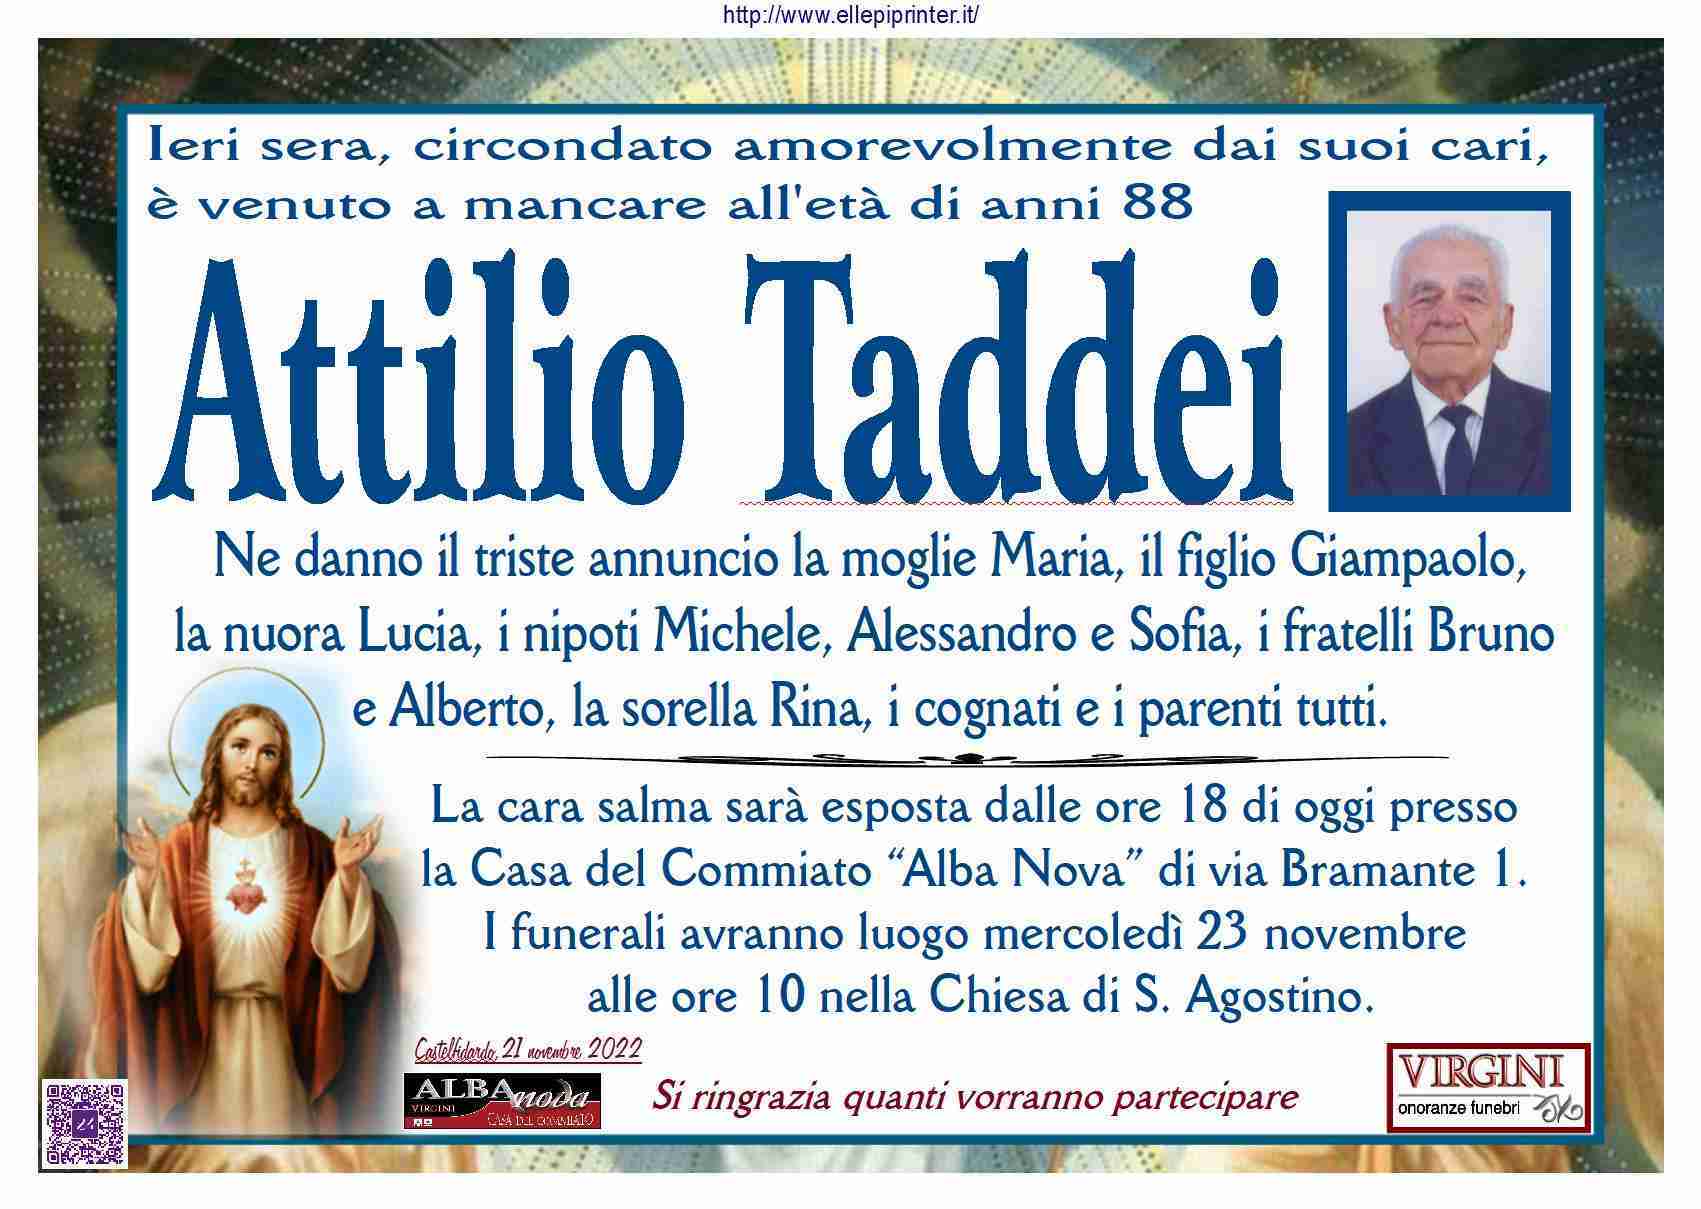 Attilio Taddei